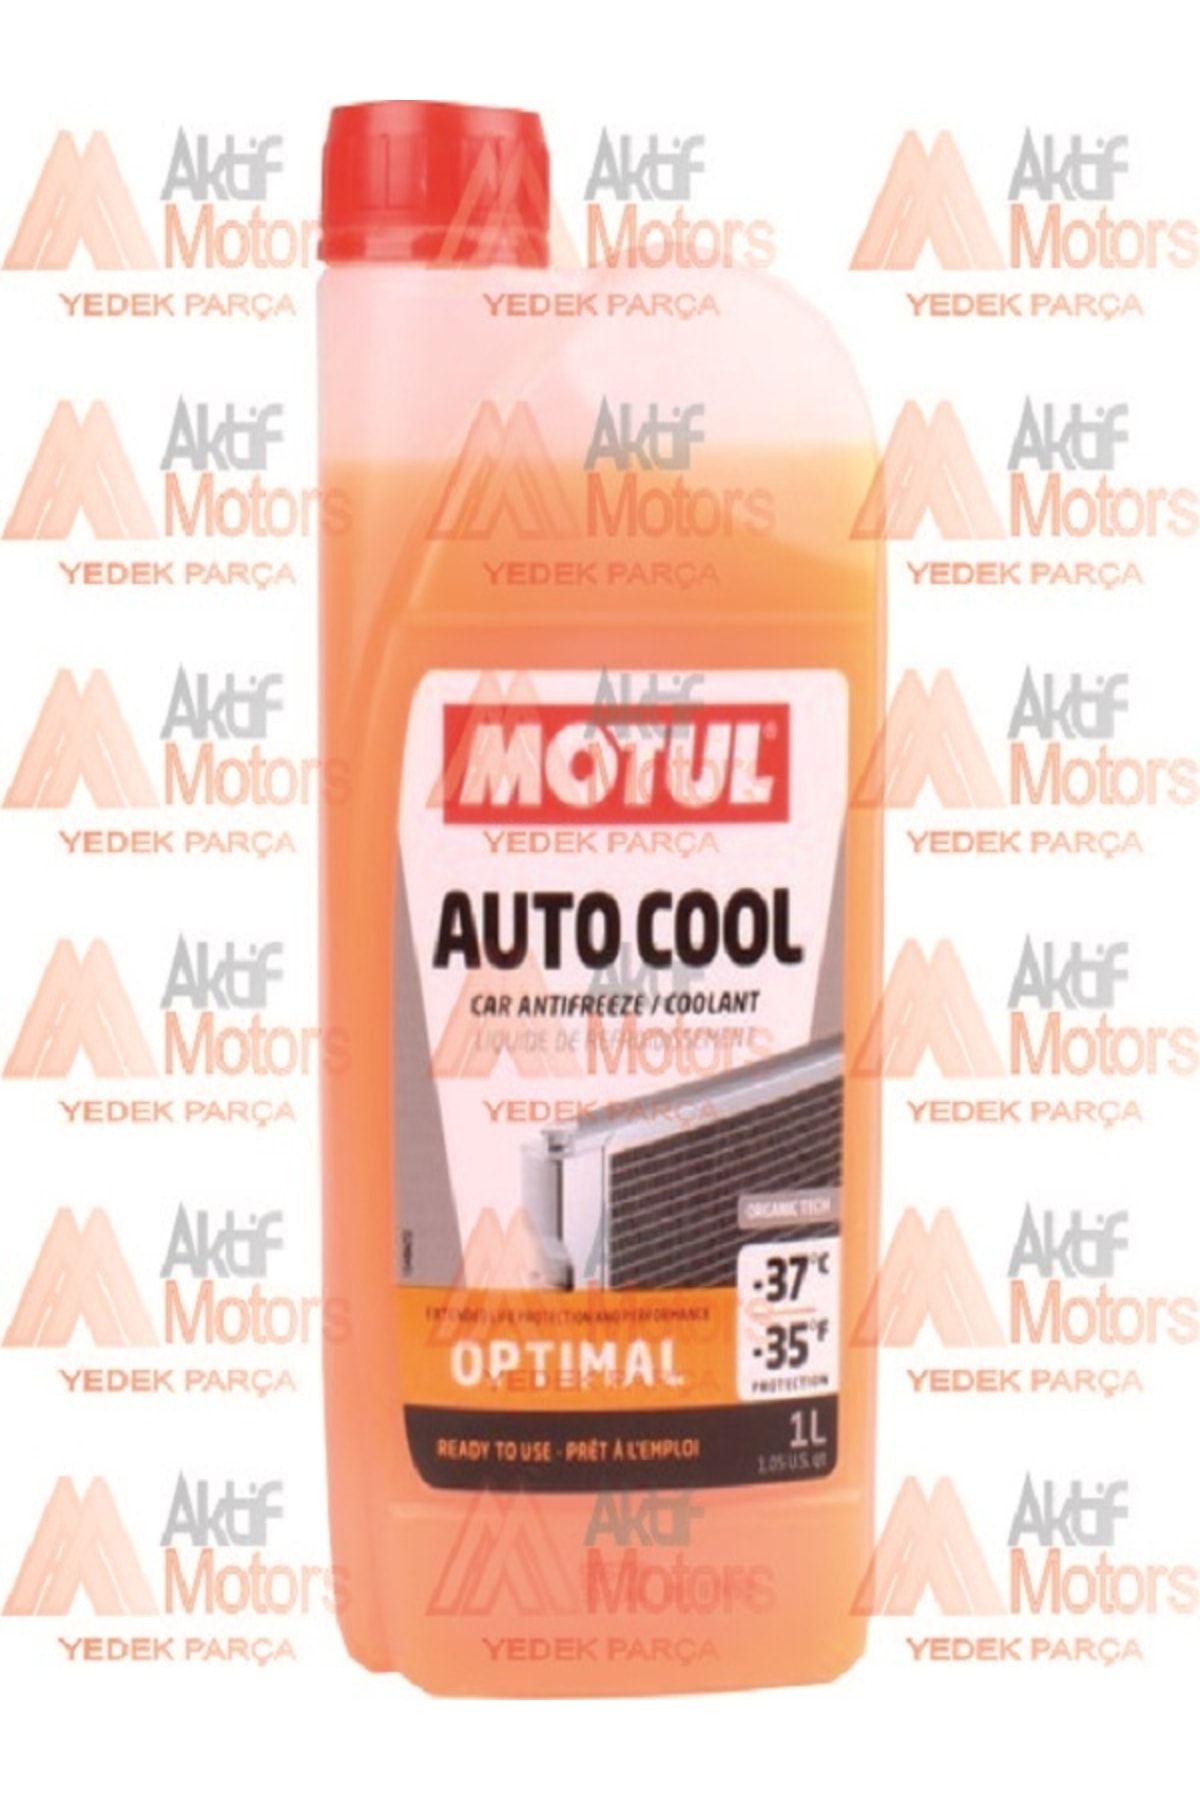 Motul Auto Cool Optımal -37°c -35°f - Antifiriz 109116